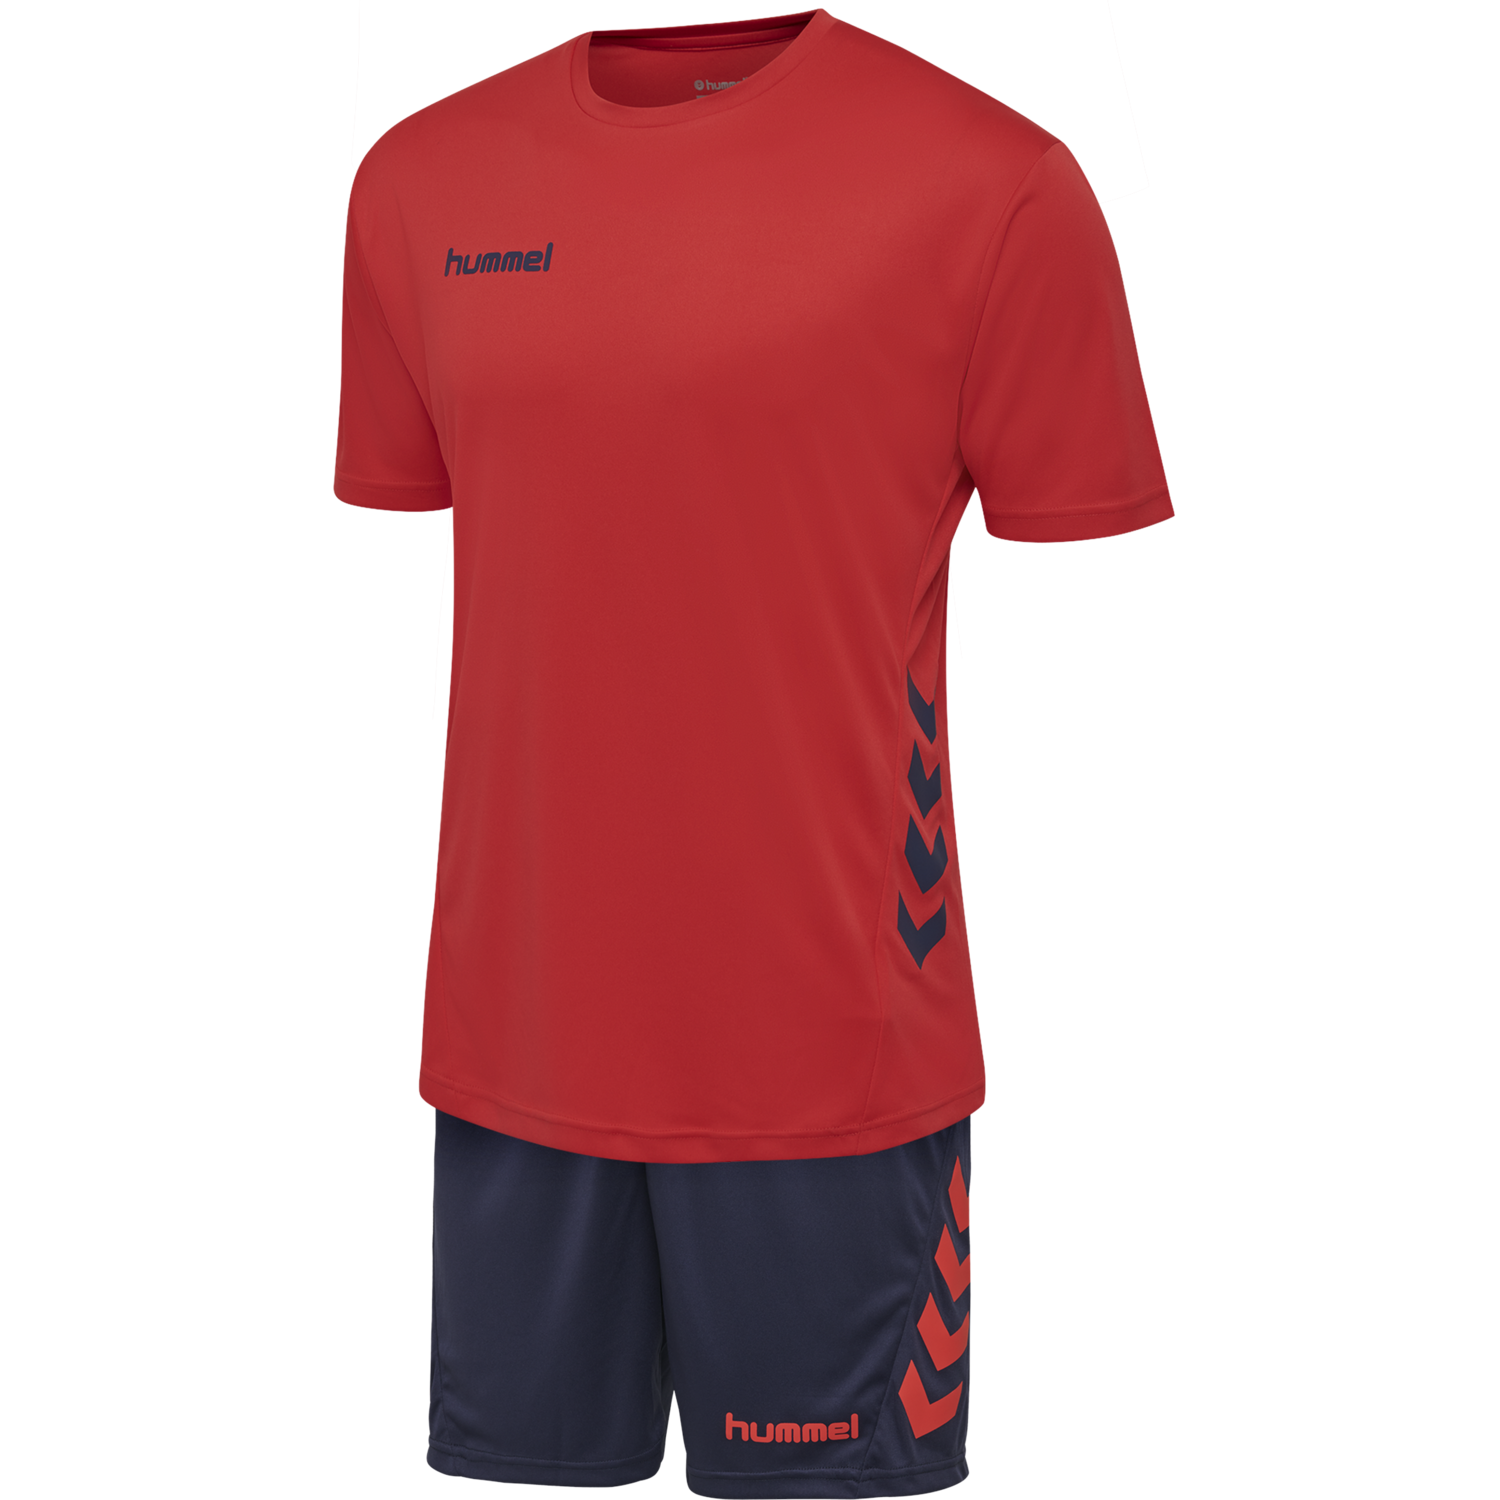 Details about   Hummel Football Soccer Mens Training Sports Short Sleeve SS Jersey Shirt Top 